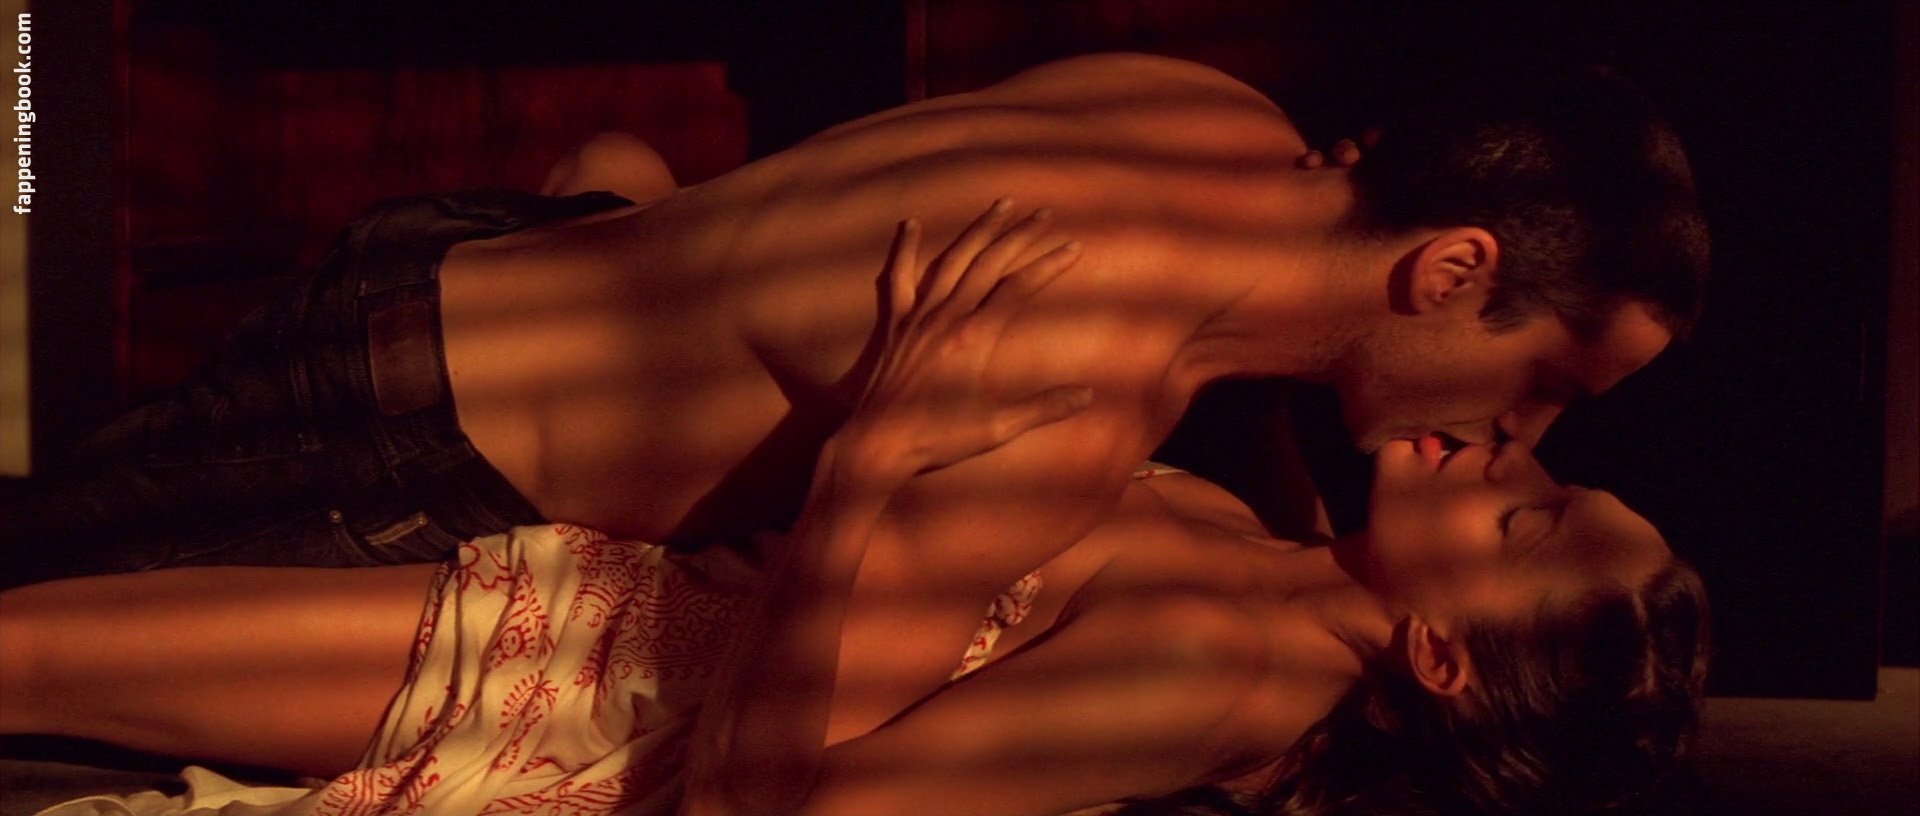 Откровенная сцена в душе от Анджелины Джоли +порно фото